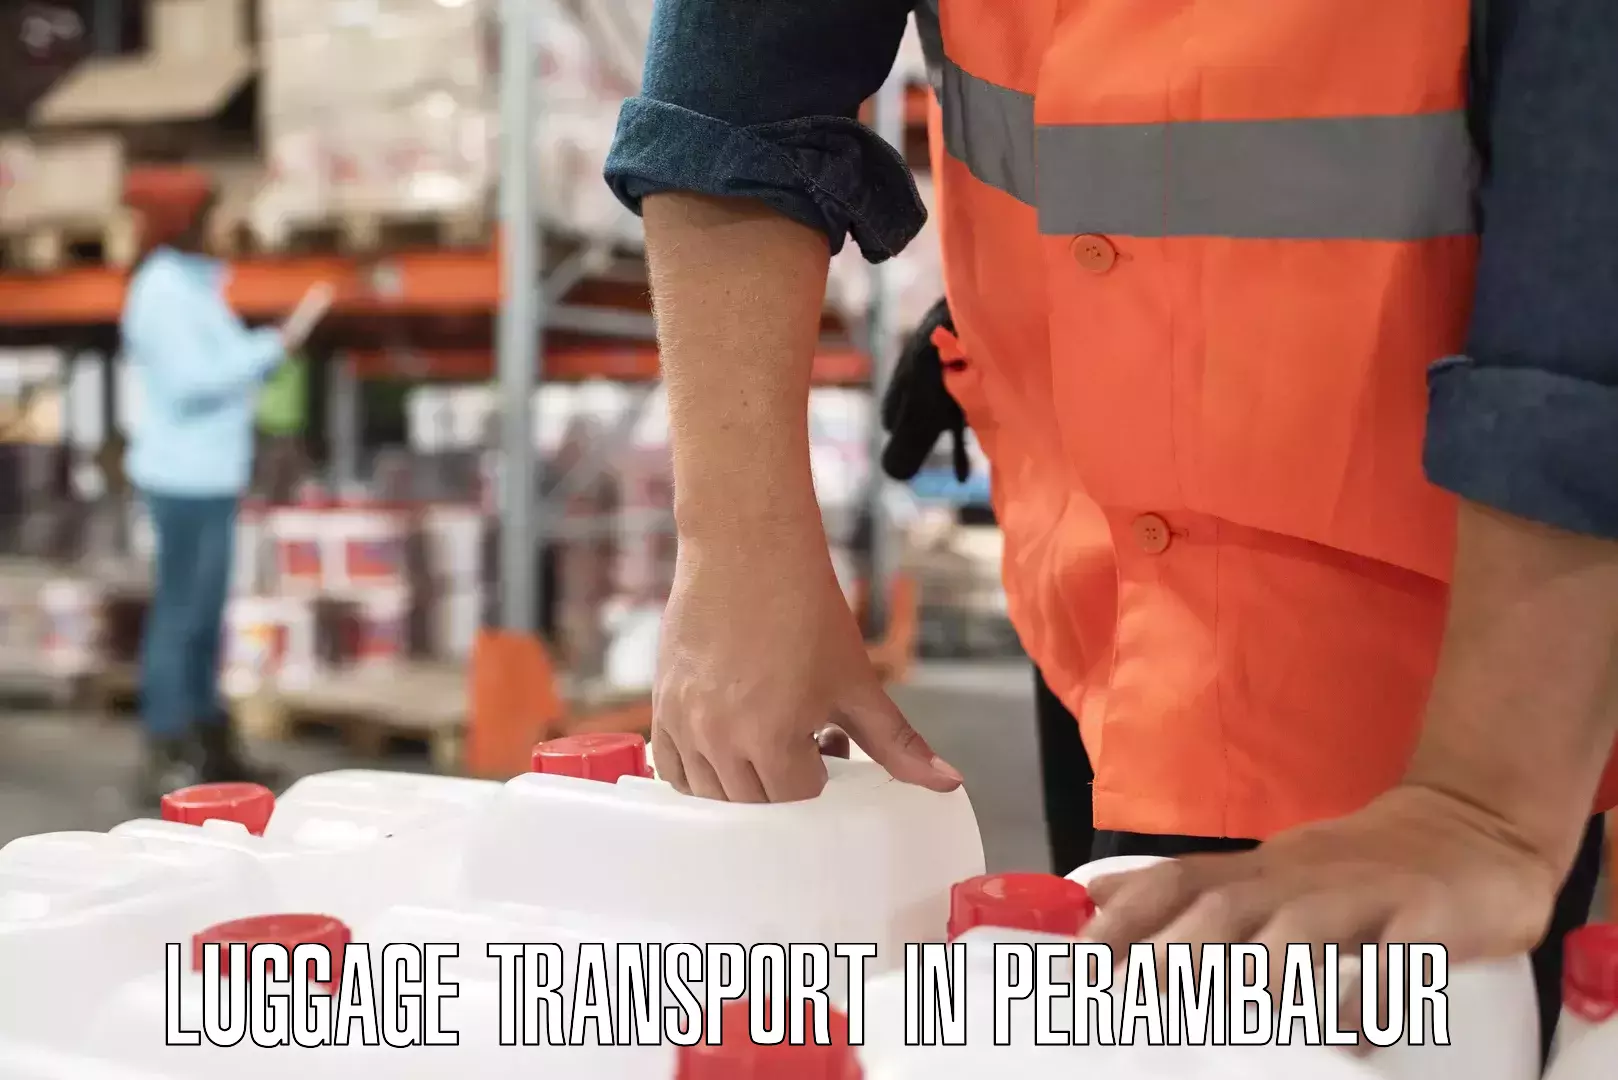 Corporate baggage transport in Perambalur